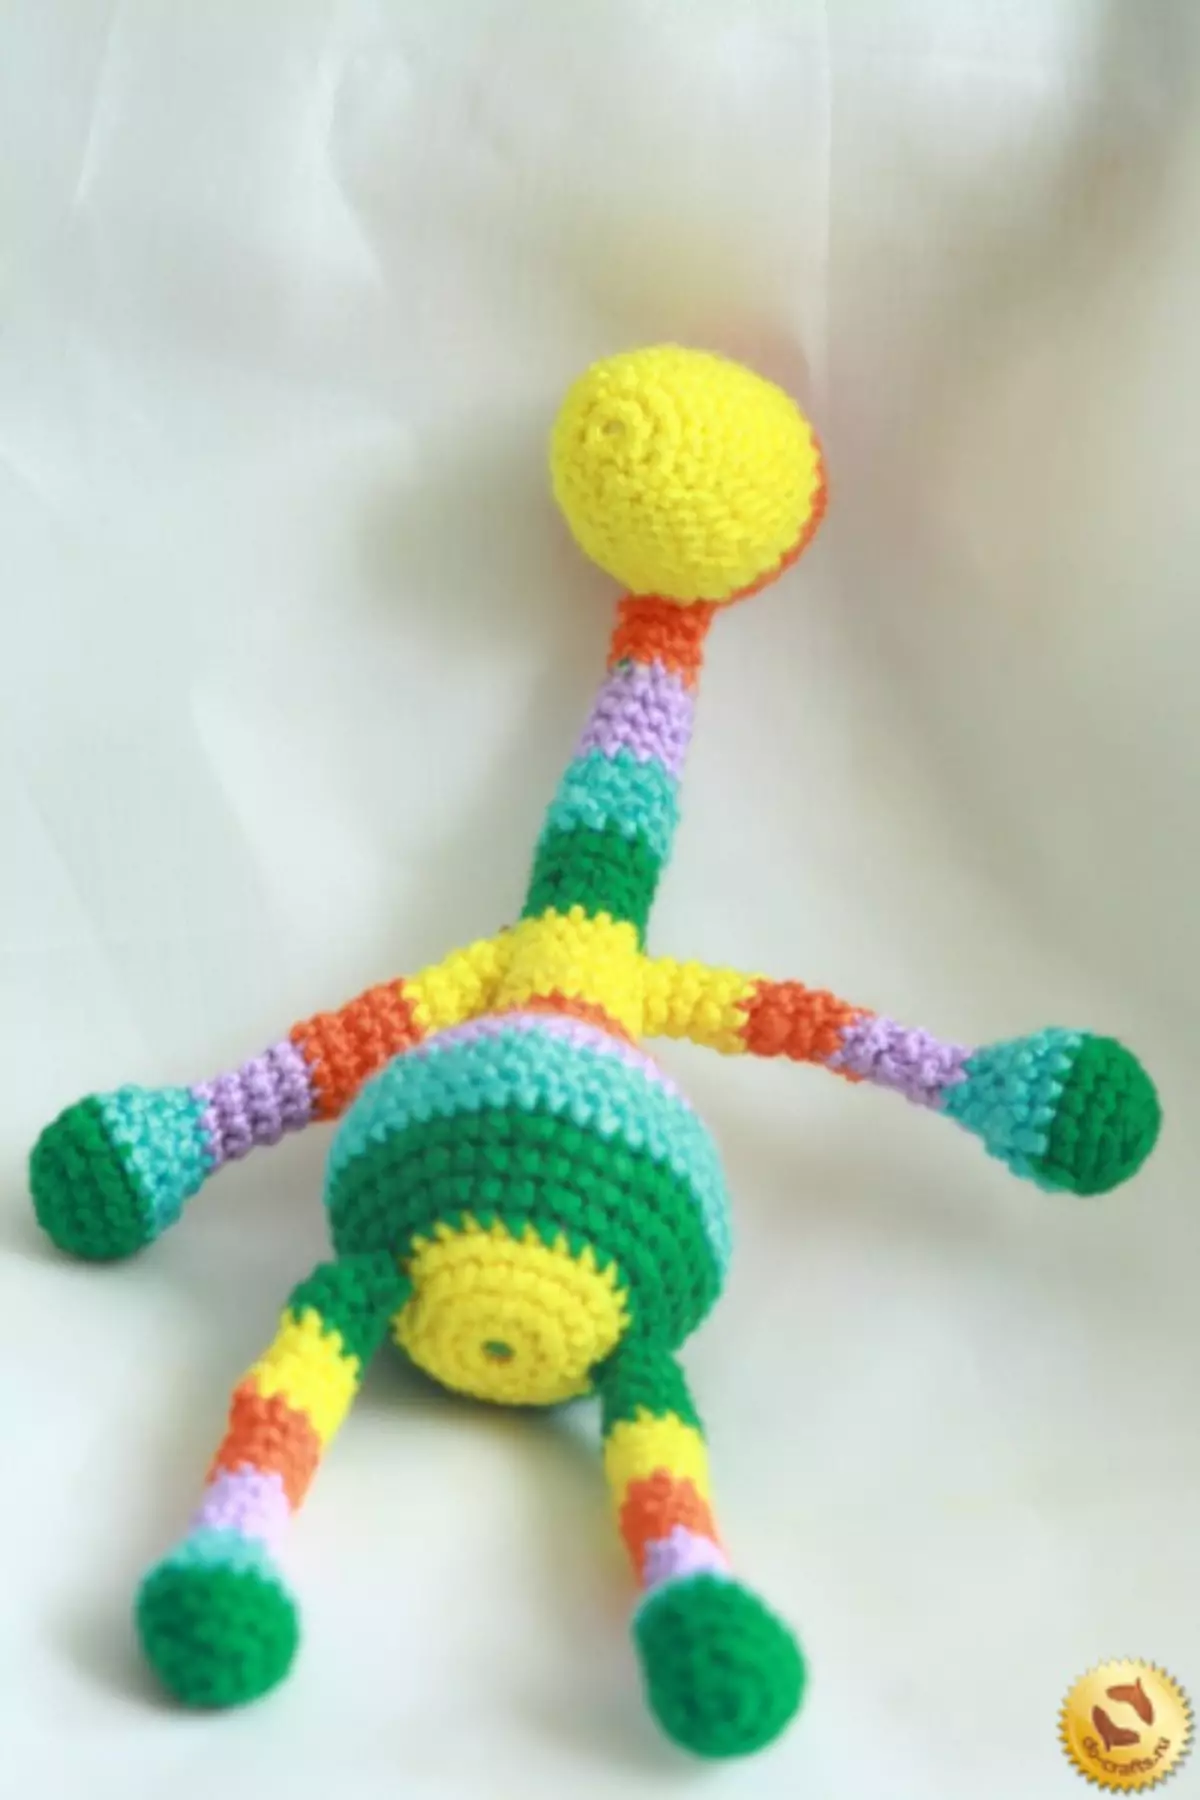 Graffe Crochet pẹlu aworan apẹrẹ ati apejuwe: kilasi titunto pẹlu fidio